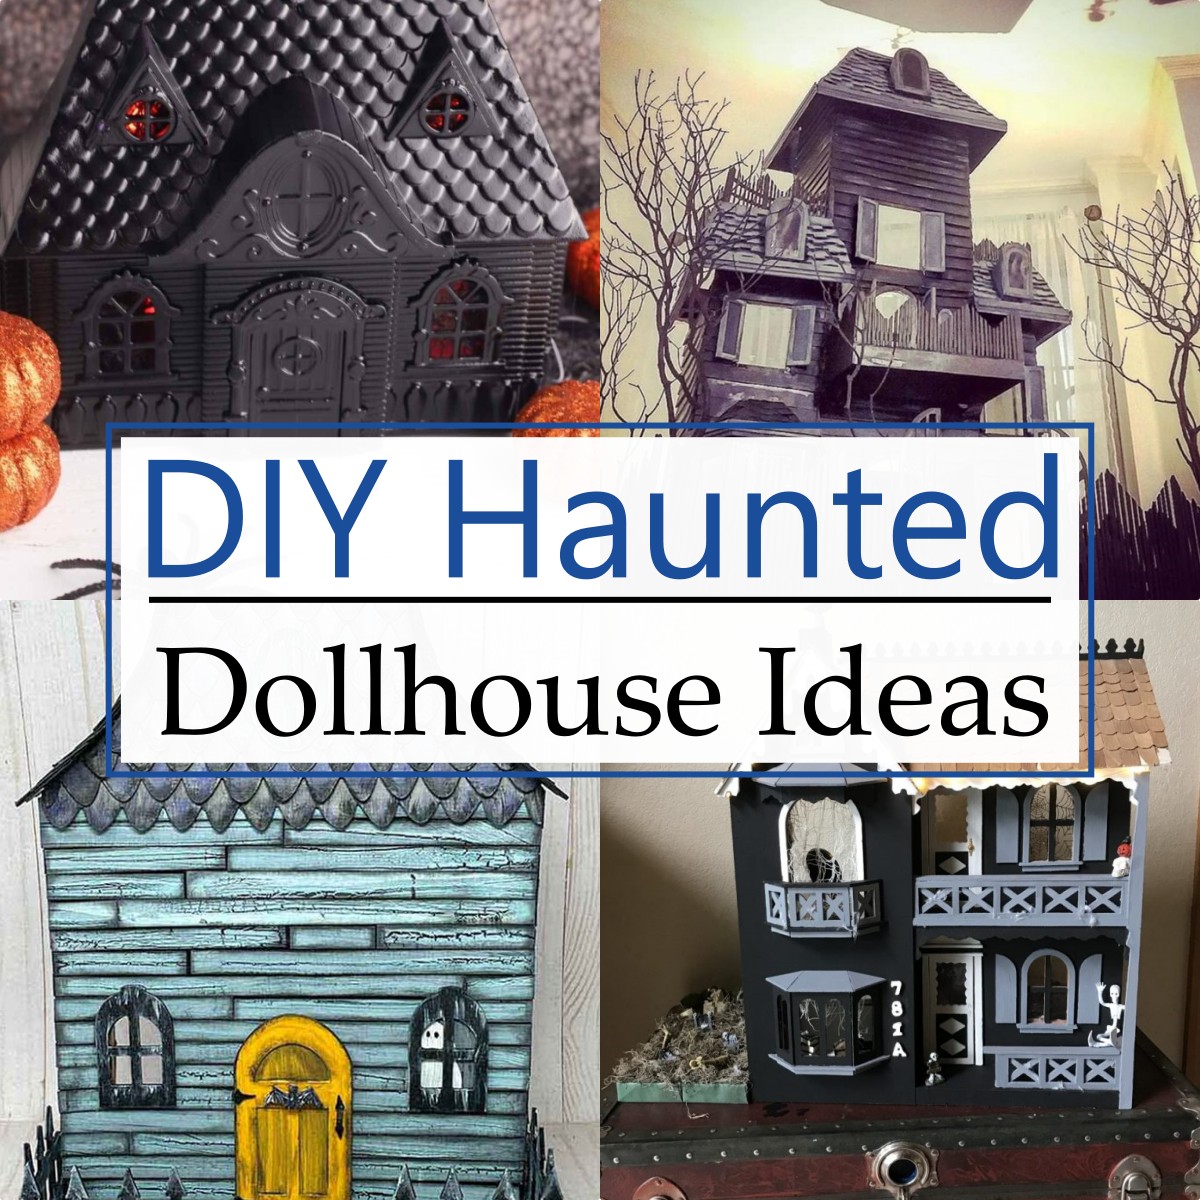 DIY Haunted Dollhouse Ideas